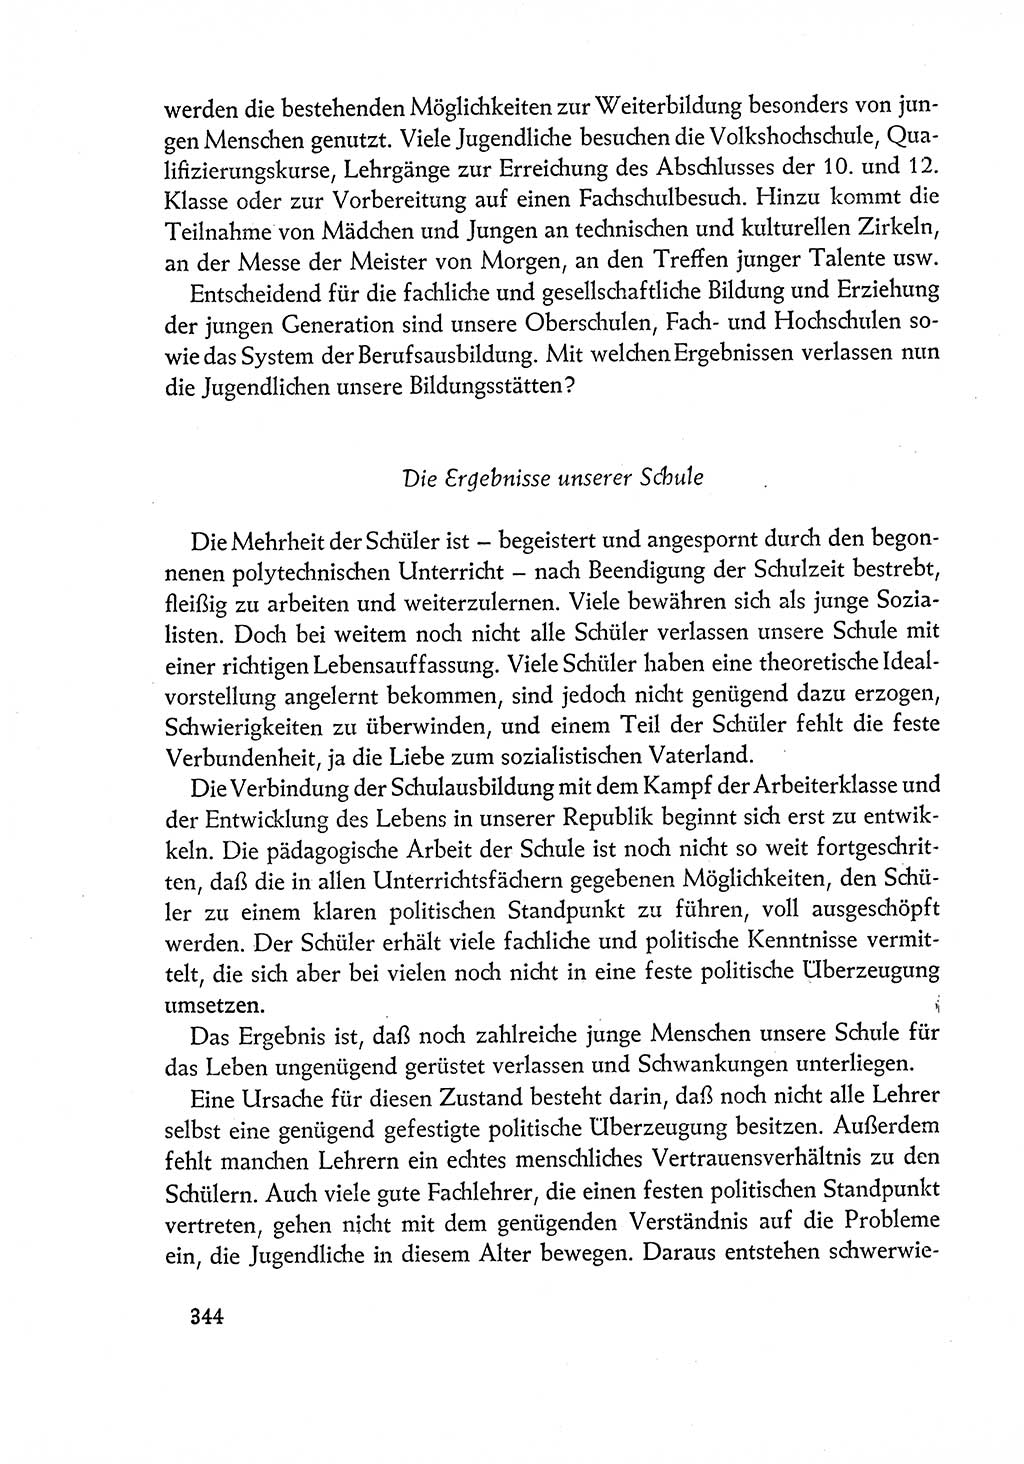 Dokumente der Sozialistischen Einheitspartei Deutschlands (SED) [Deutsche Demokratische Republik (DDR)] 1960-1961, Seite 344 (Dok. SED DDR 1960-1961, S. 344)